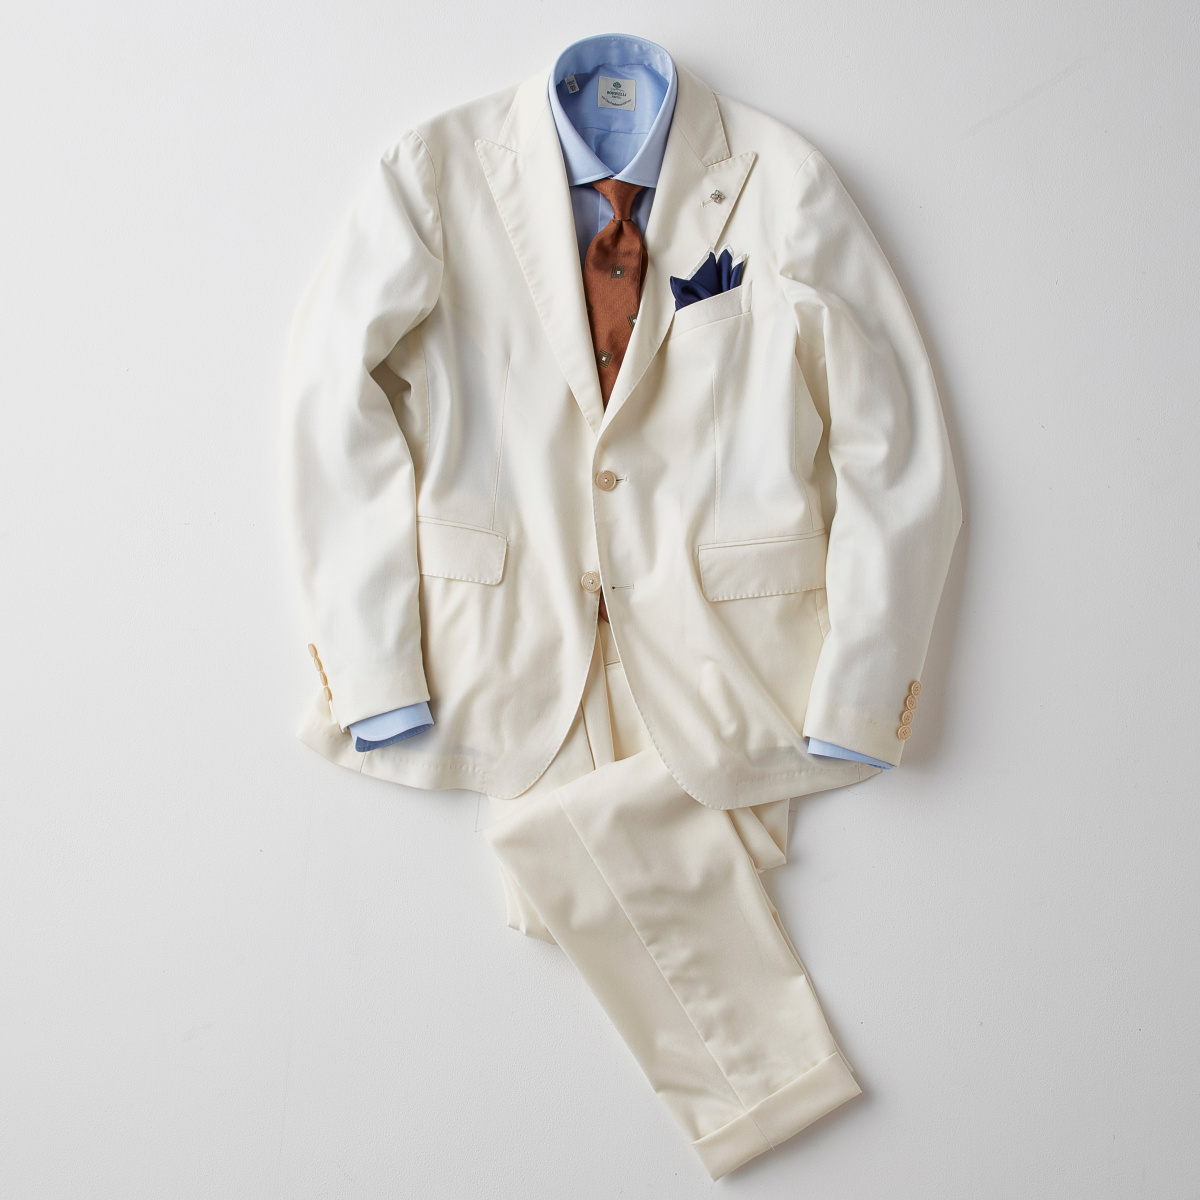 19年代のリゾートスタイルを象徴する白のスーツ 華麗なるギャツビー編 Pen Online